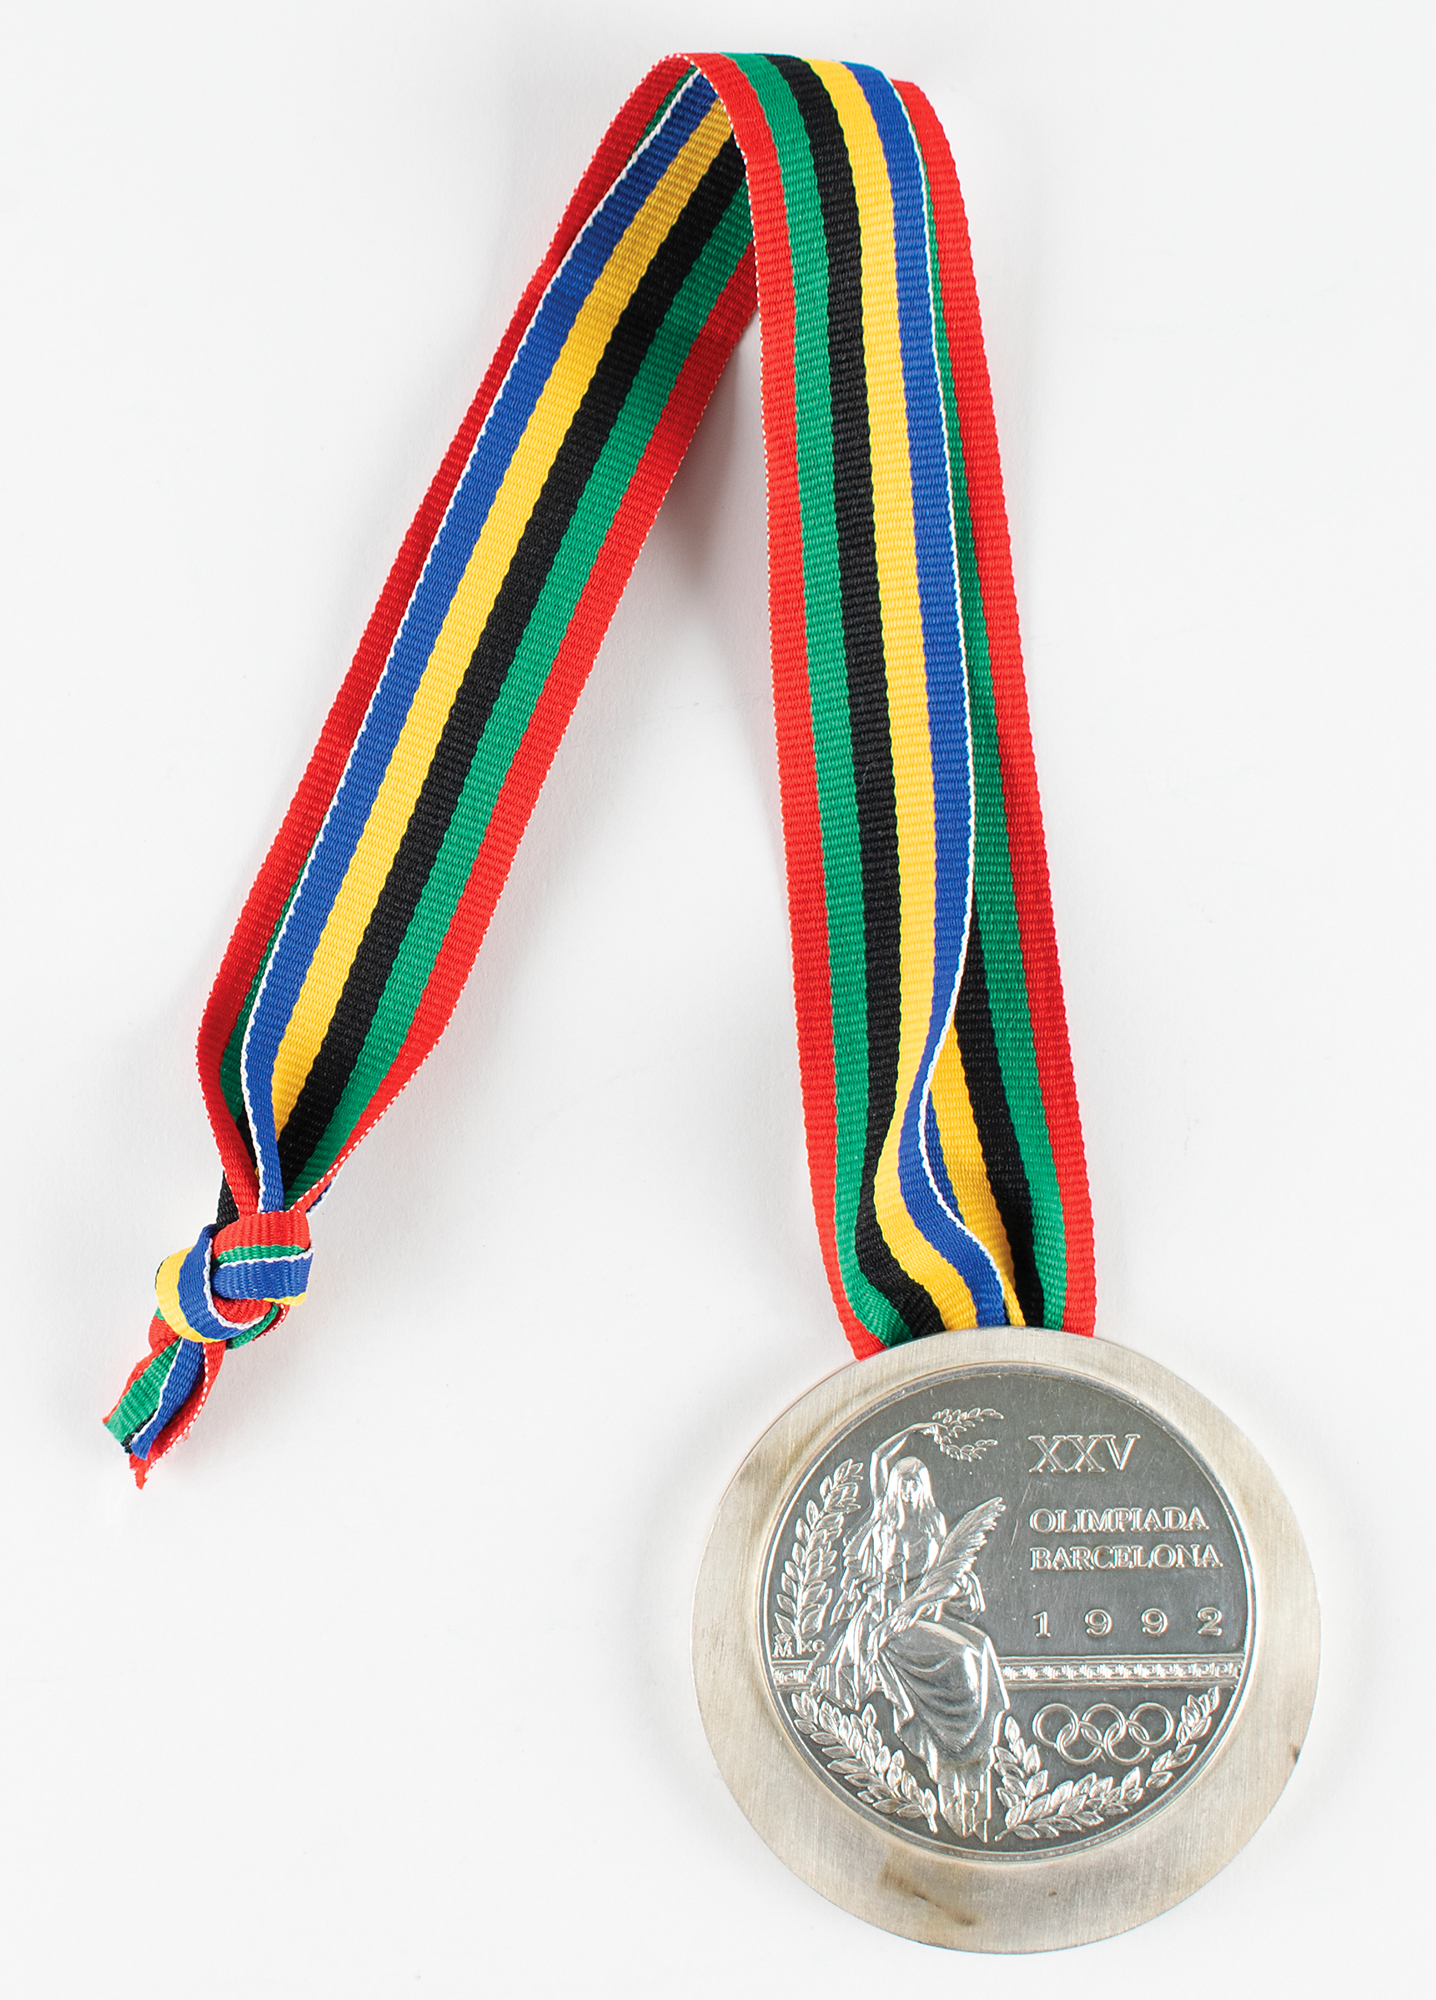 Lot #6139 Barcelona 1992 Summer Olympics Silver Winner's Medal